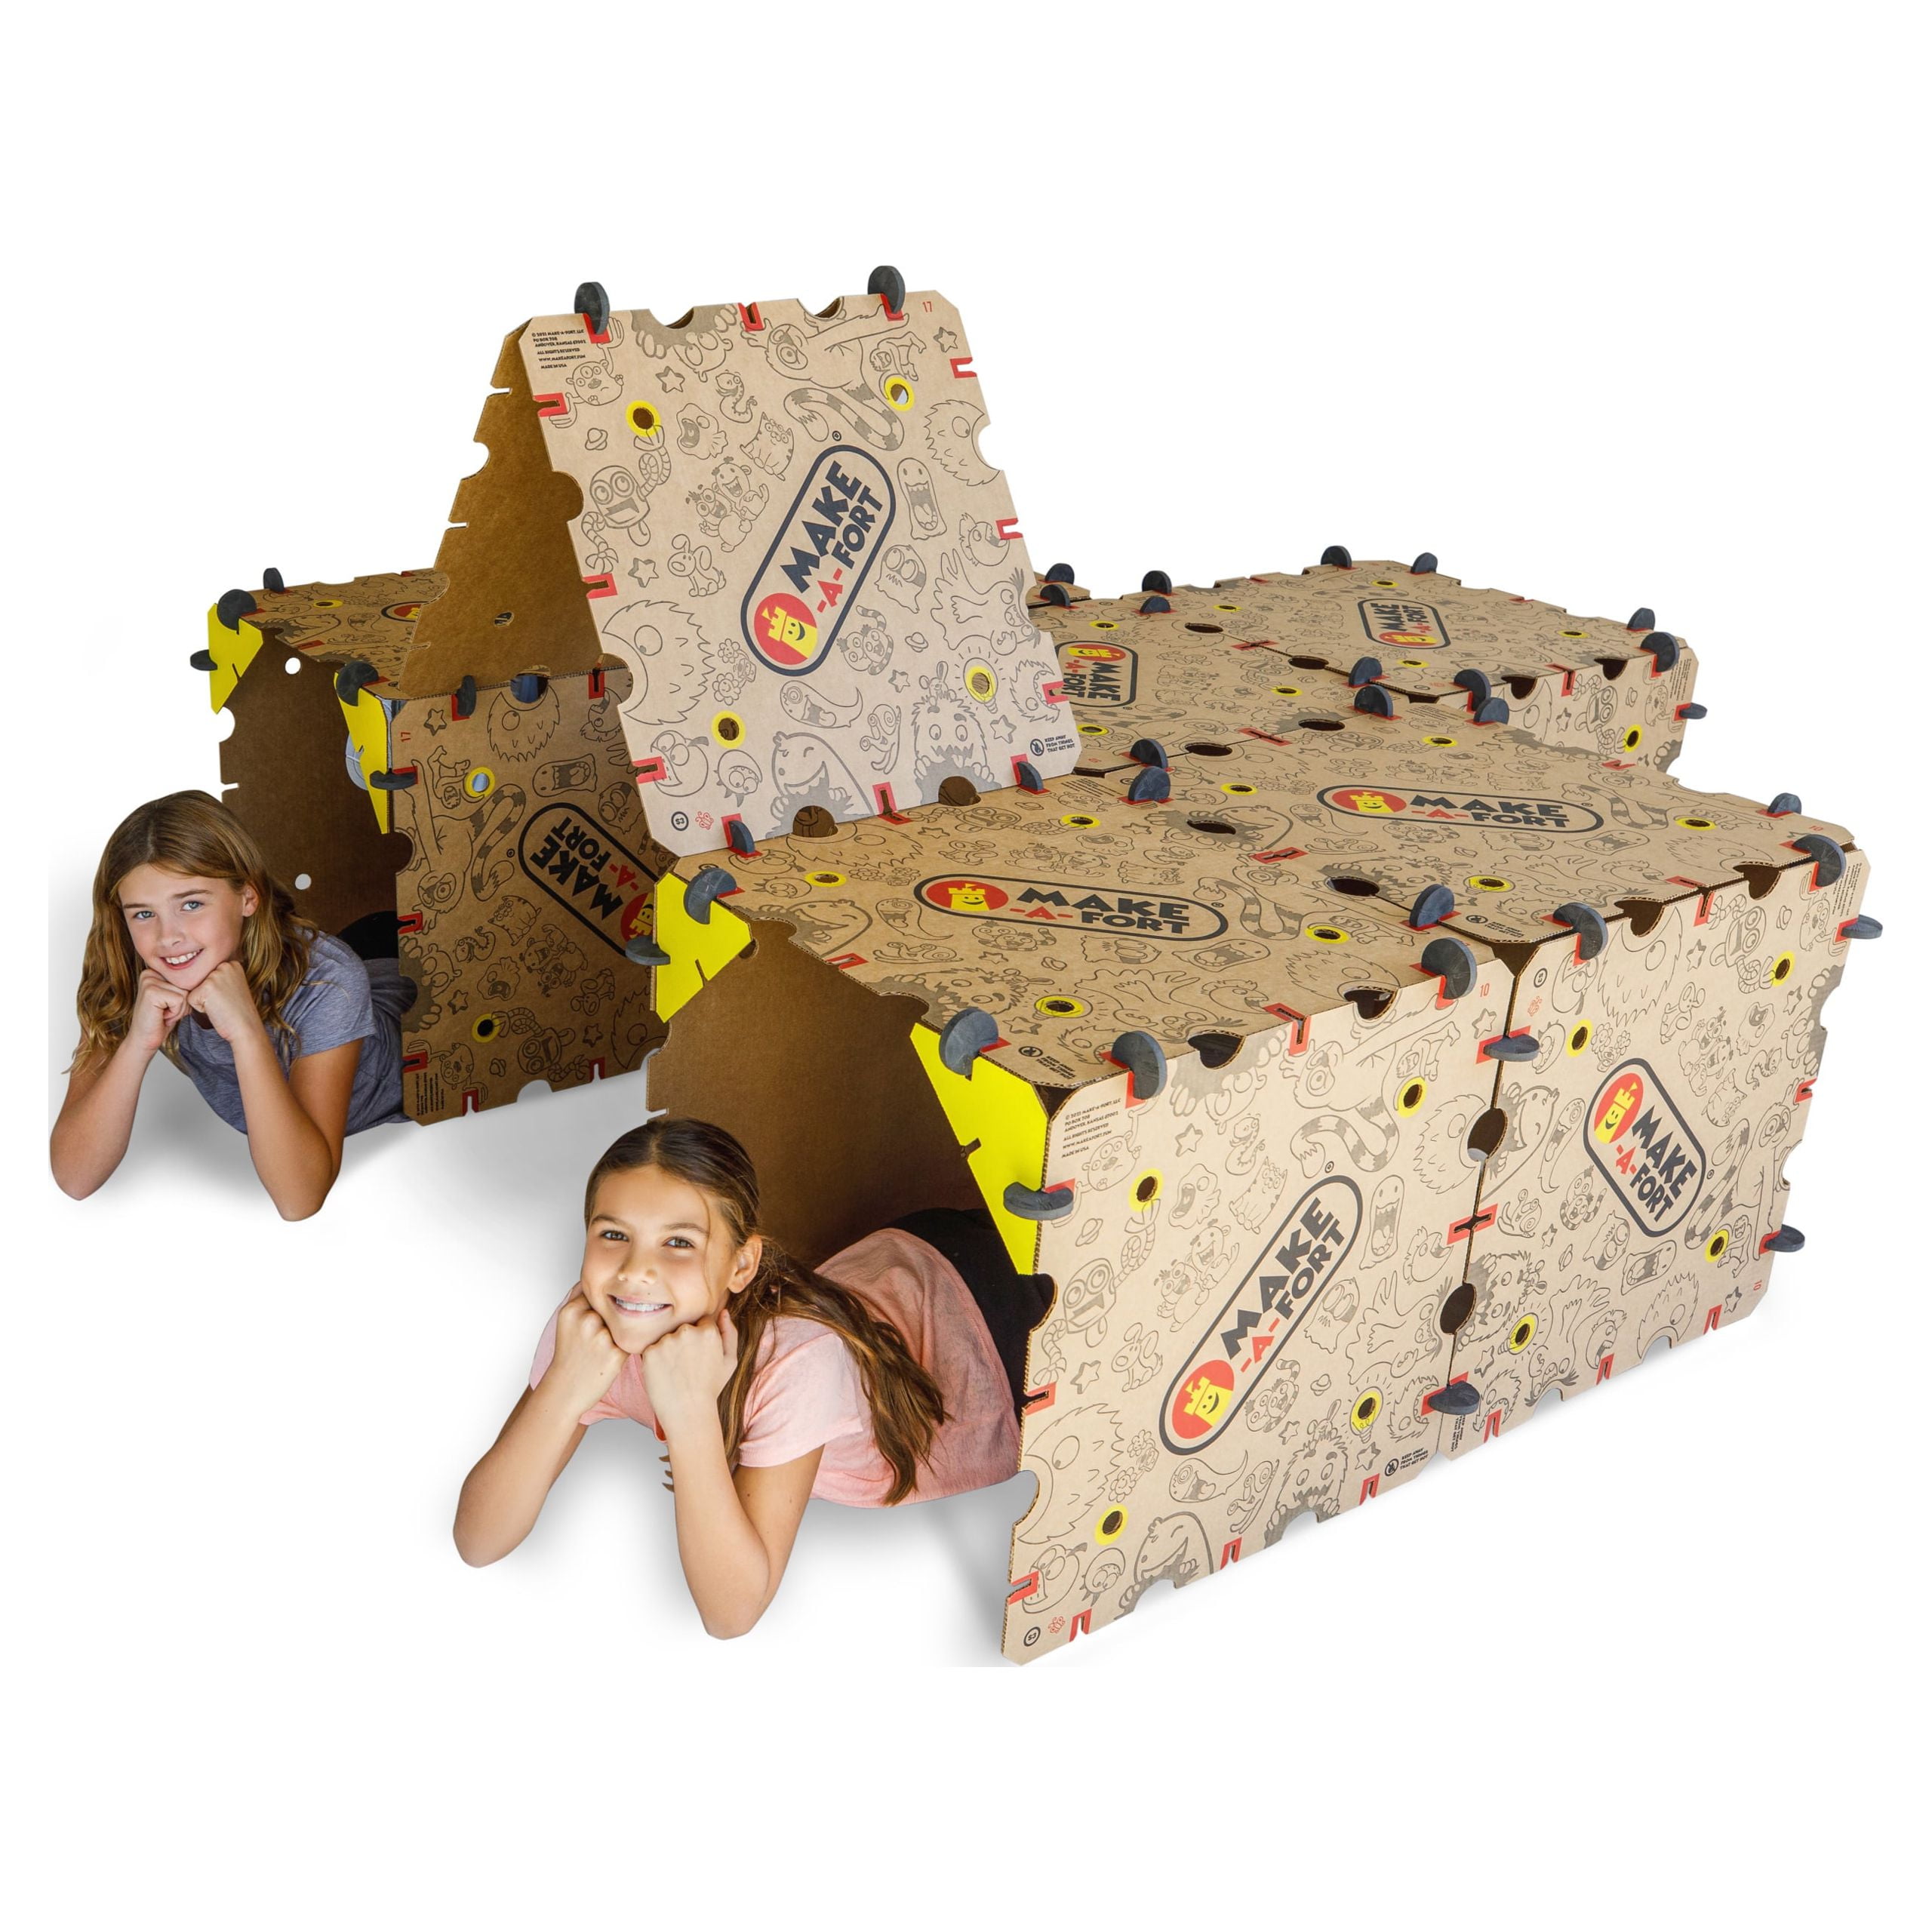 Molcey Blanket Fort Building Kit For Kids 4-8 8-12 - Build A Fort For Kids,  Ultimate Fort Builder - Kids Forts Indoor Fort, Outdoor For